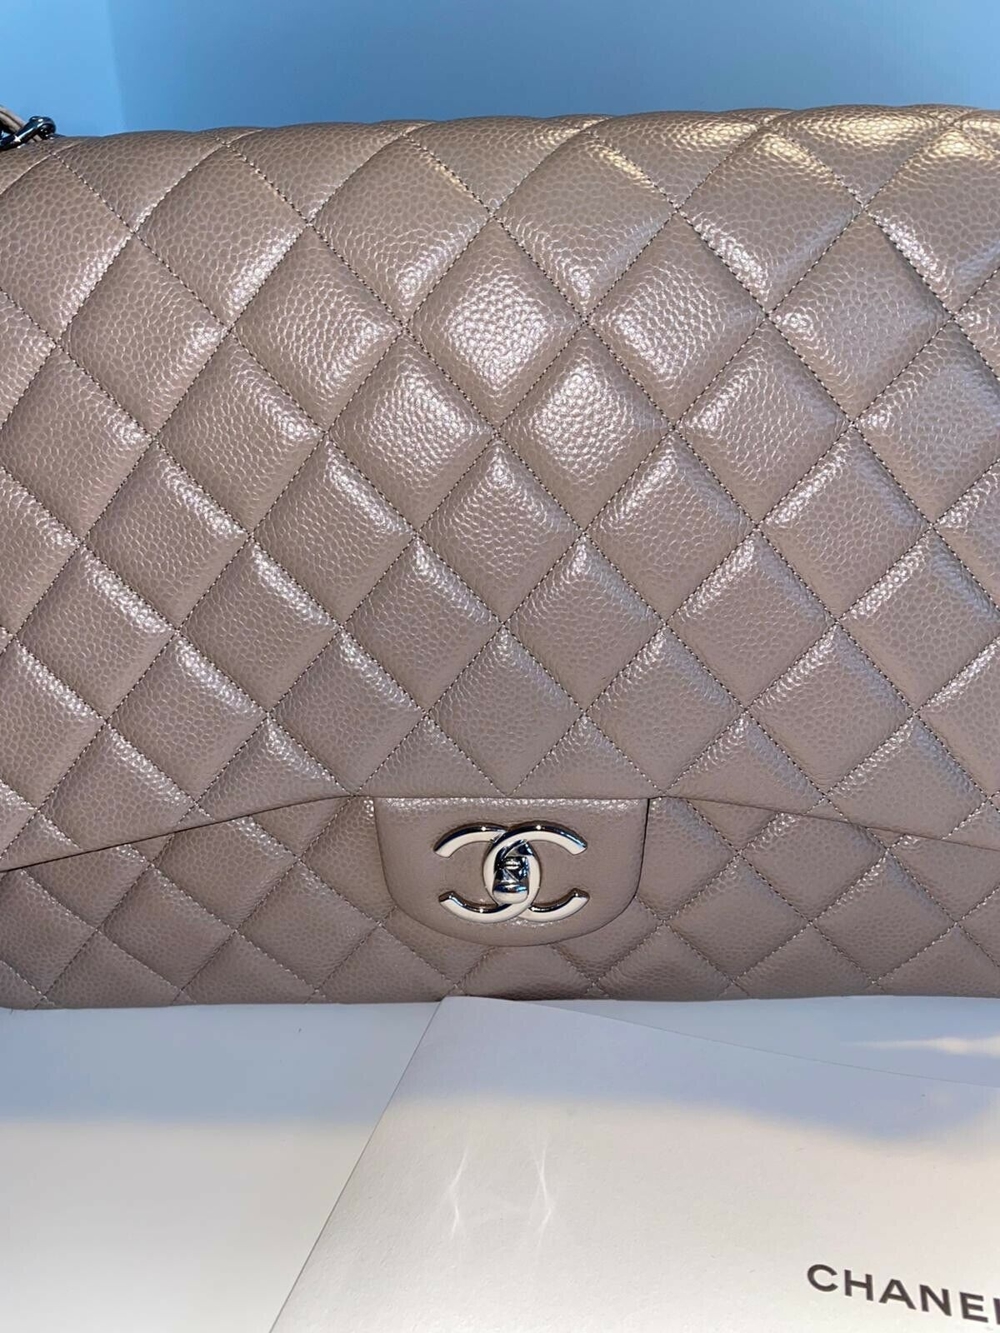 Original Chanel 2.55 Jumbo Tasche Bag, Kaviar Leder